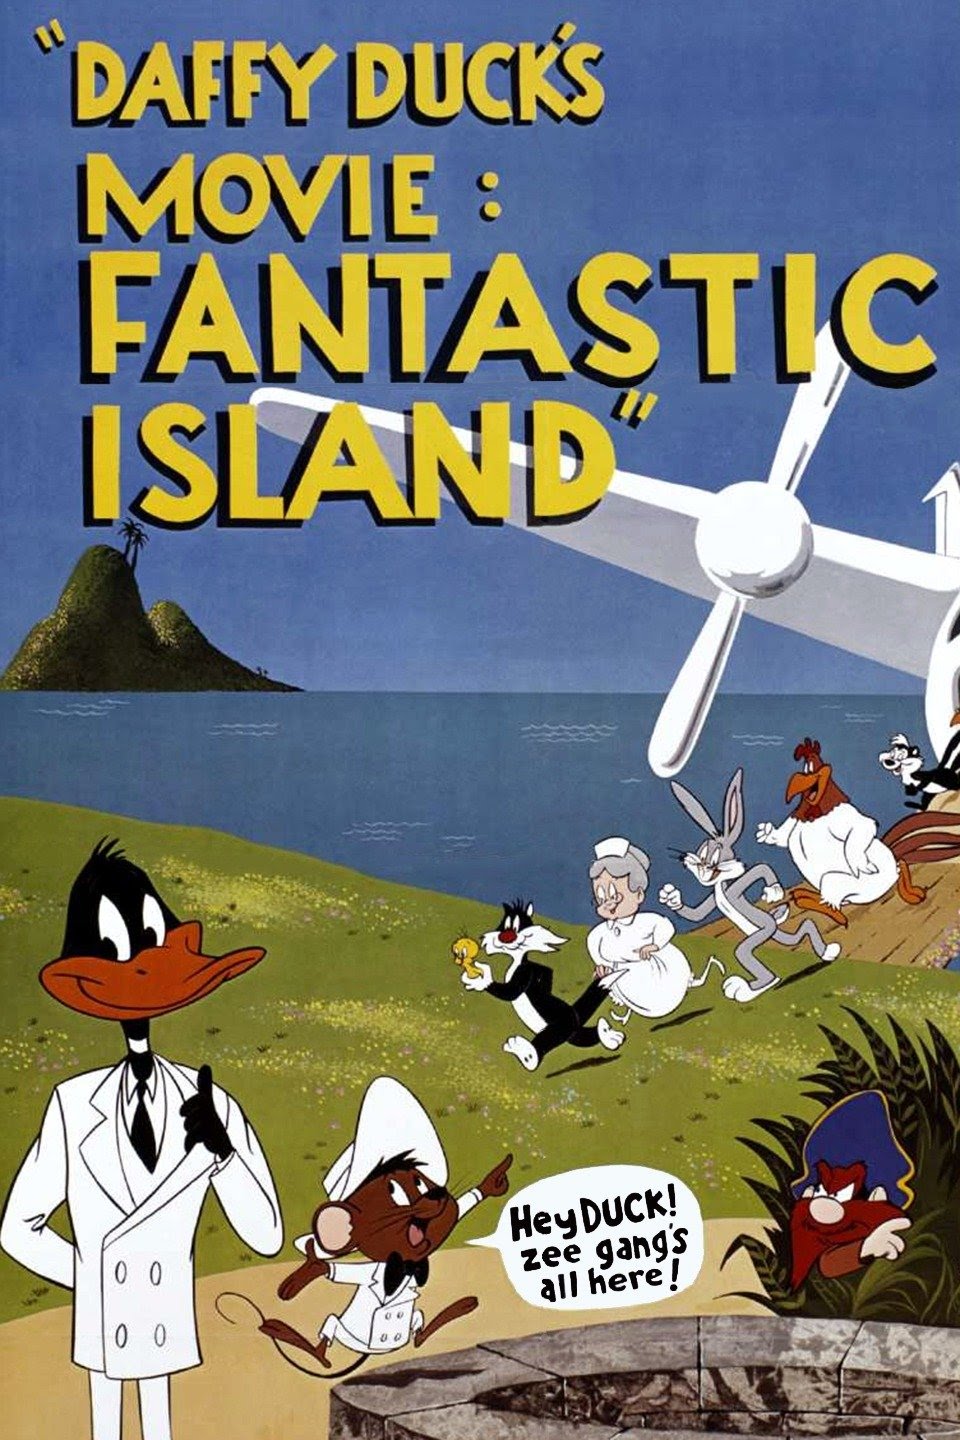 Daffy Ducks Fantastic Island Warner Bros